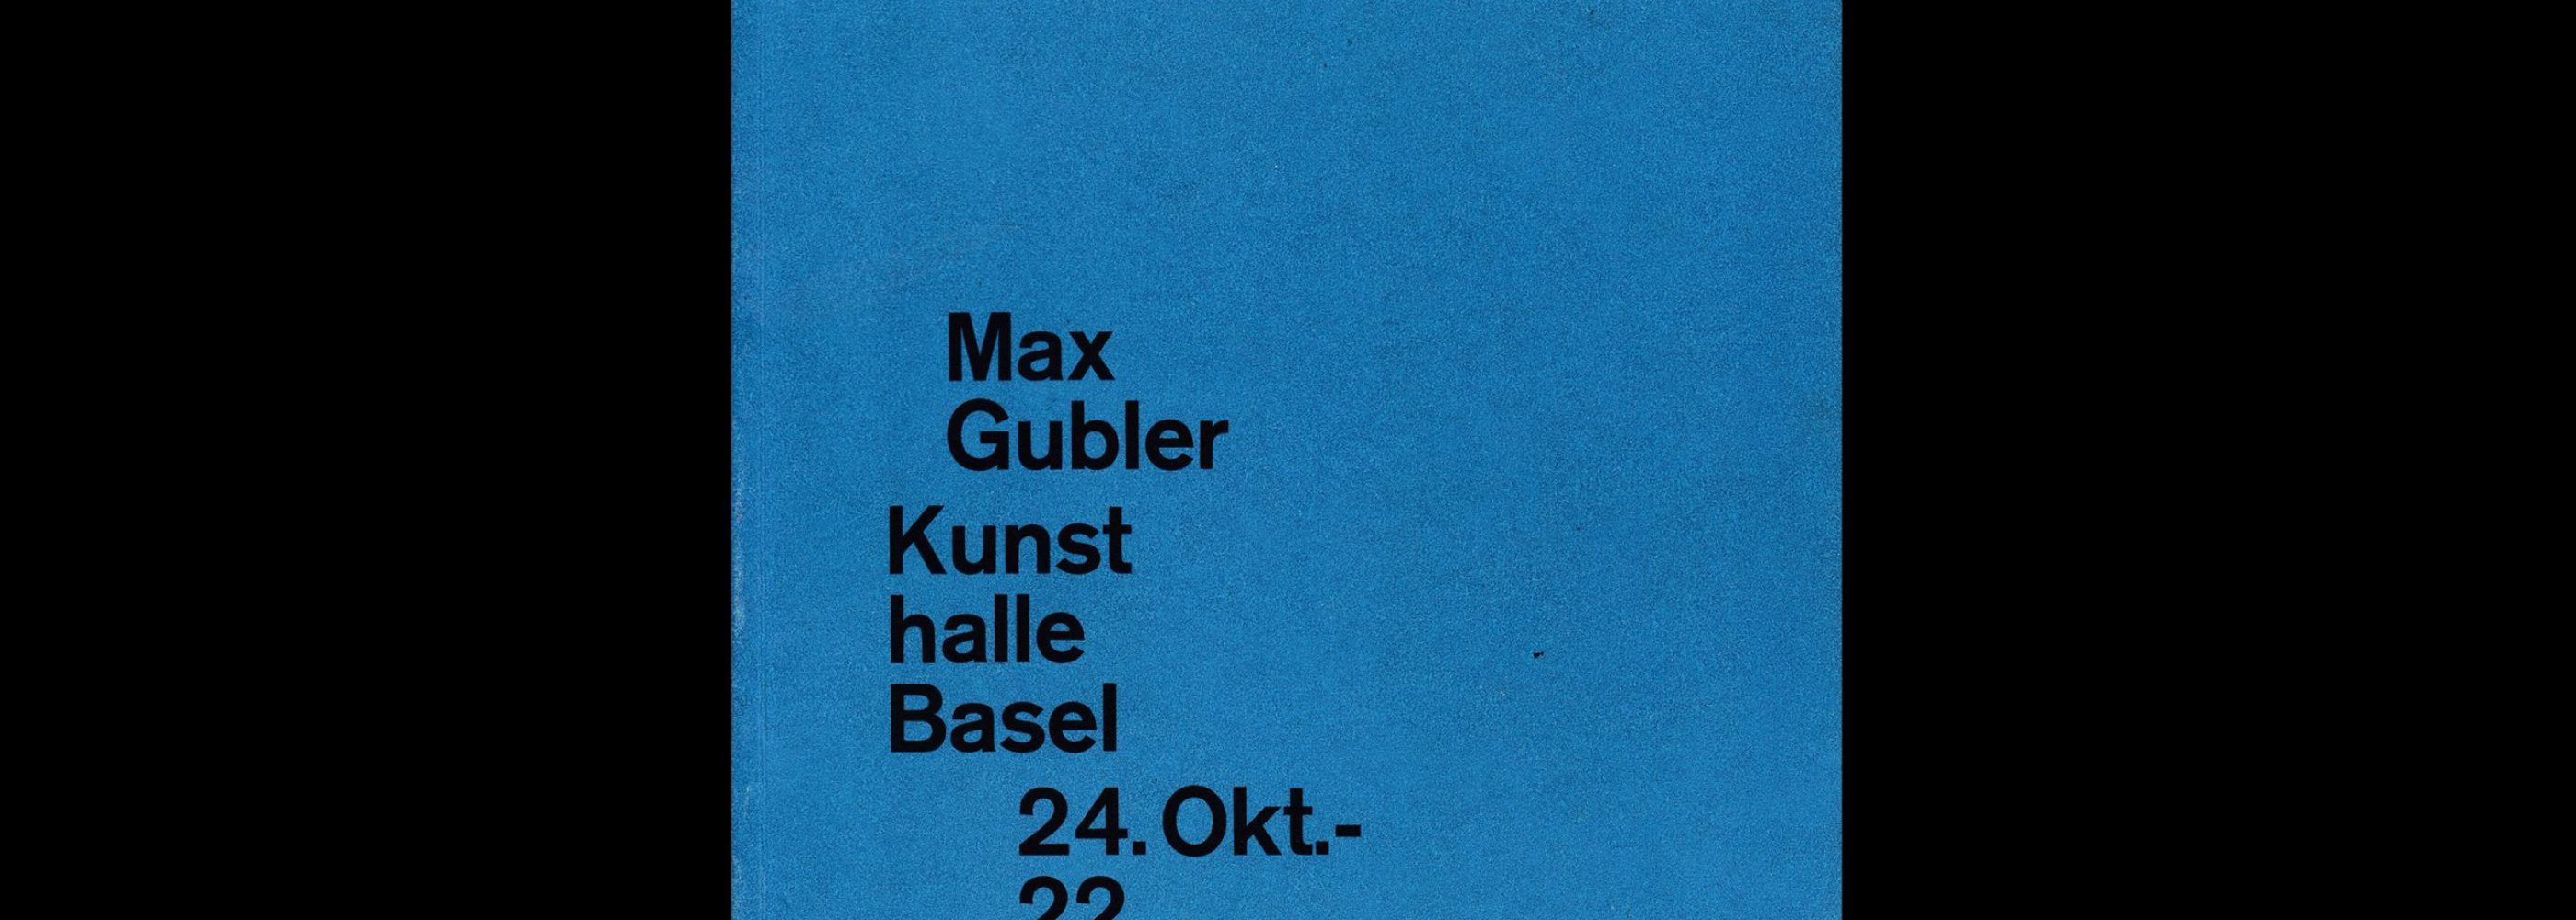 Max Gubler, Kunsthalle Basel, 1959 designed by Armin Hofmann